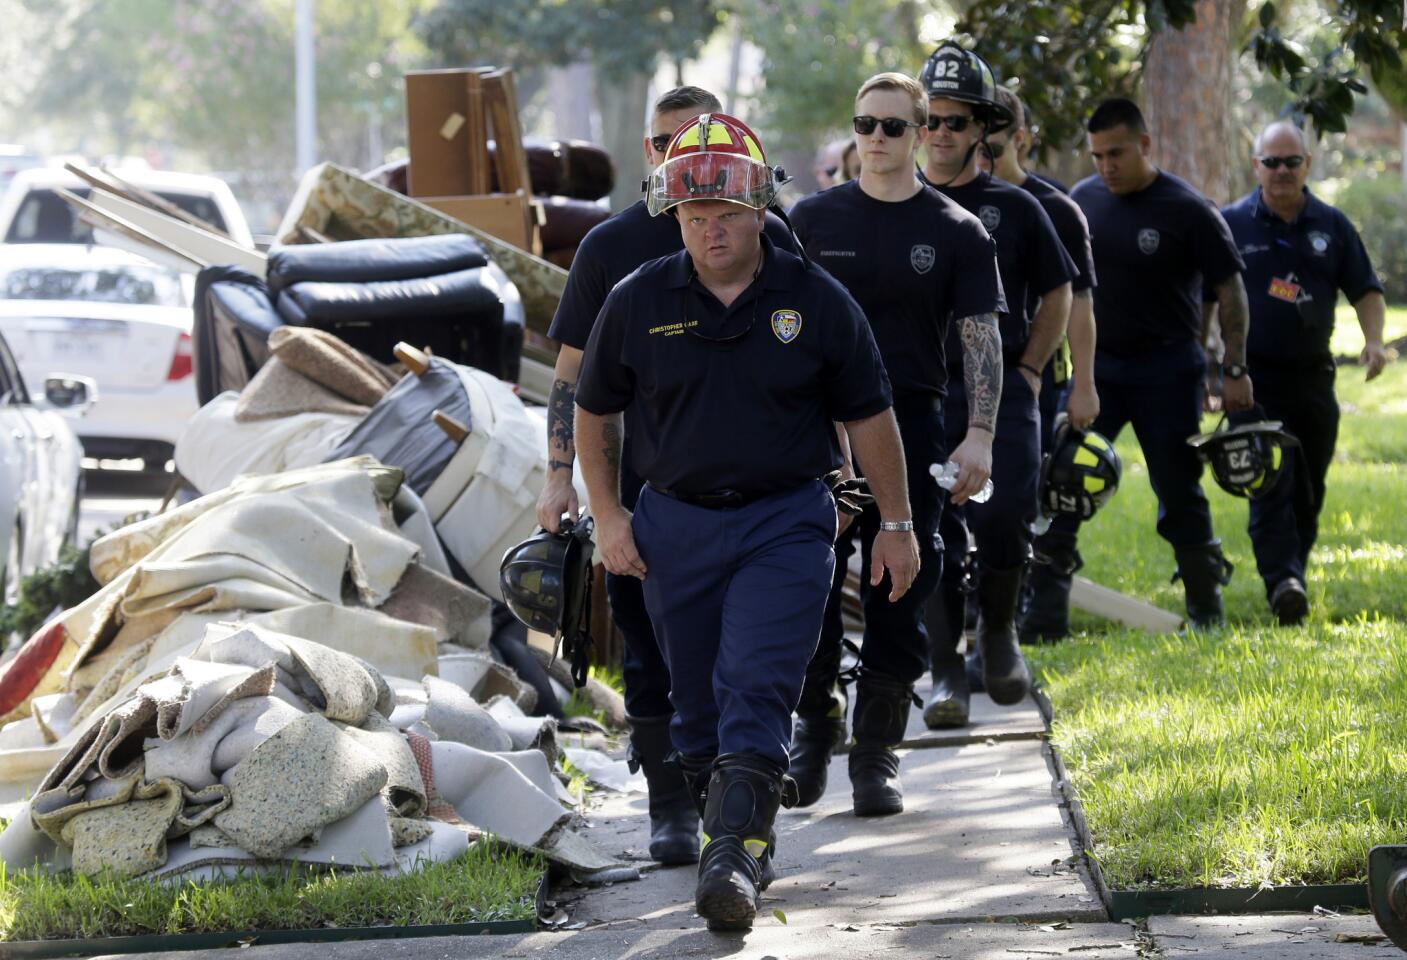 Bomberos caminan el jueves 31 de agosto de 2017 junto a escombros removidos de casas durante una bÃºsqueda puerta por puerta en un vecindario que fue azotado por las inundaciones que la tormenta tropical Harvey provocó en Houston, Texas. (AP Foto/LM Otero)